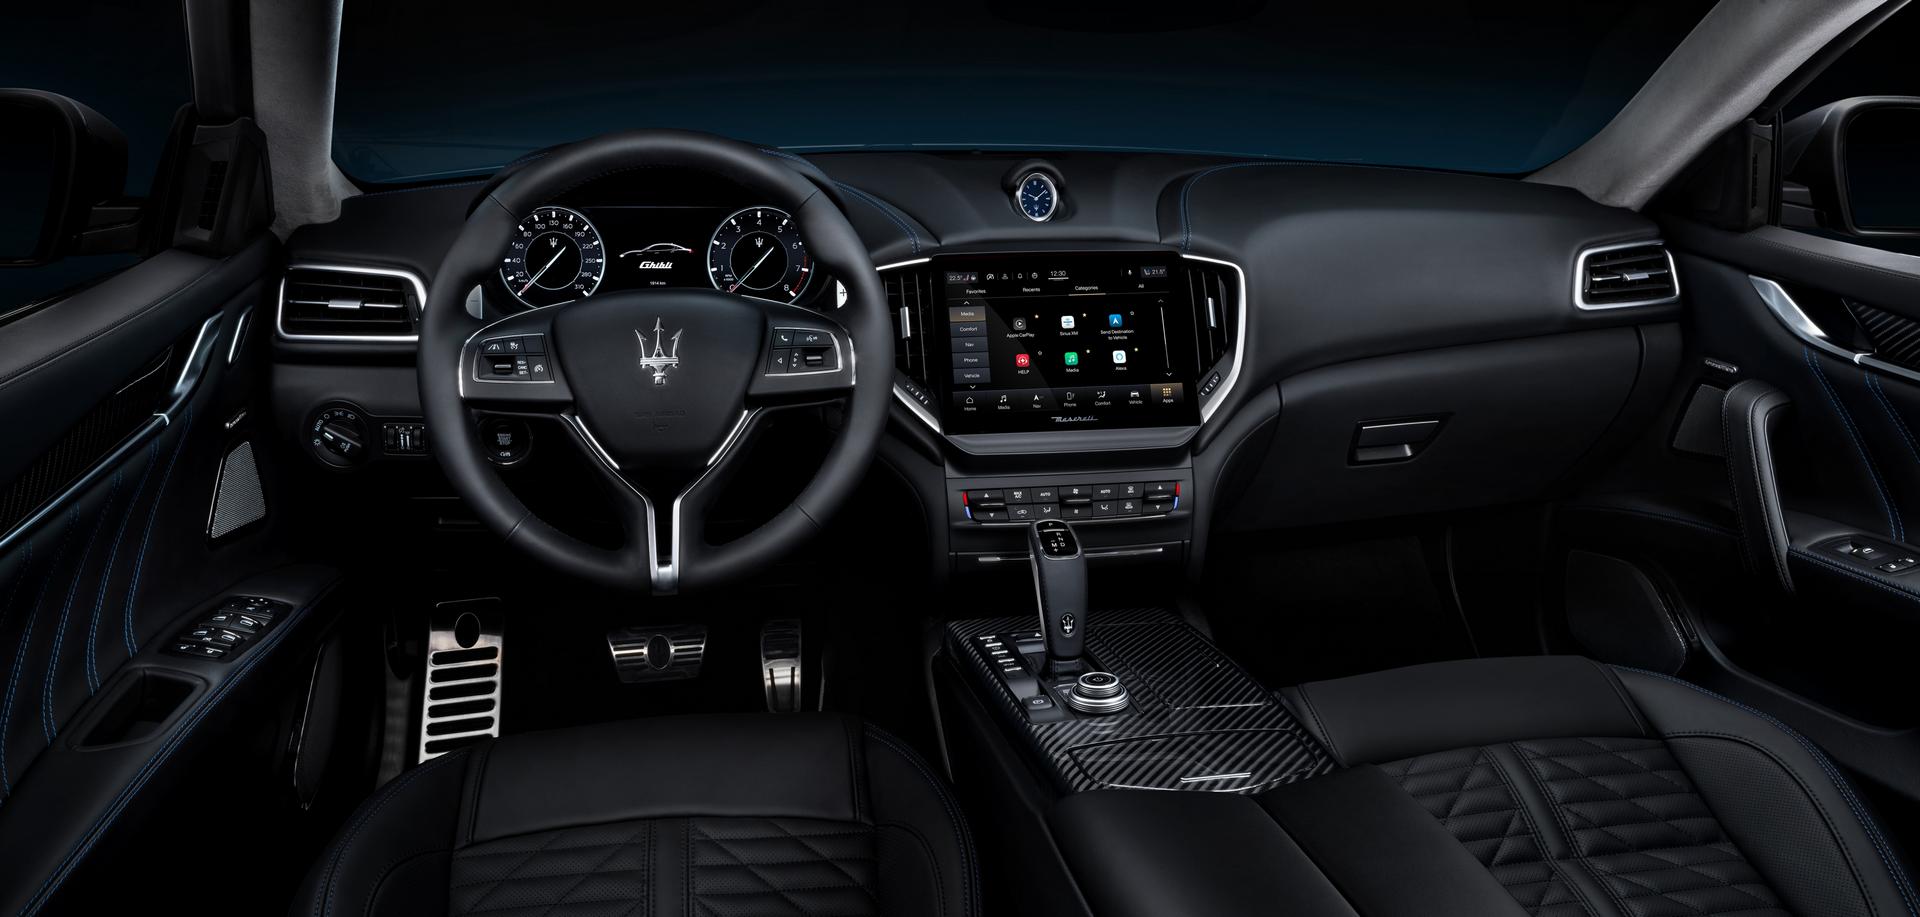 Maserati Ghibli Hybrid использует мягкую гибридную технологию. Трансмиссия сочетает в себе 2,0-литровый 4-цилиндровый двигатель с 48-вольтовым генератором и дополнительным электрическим нагнетателем (e-Booster).